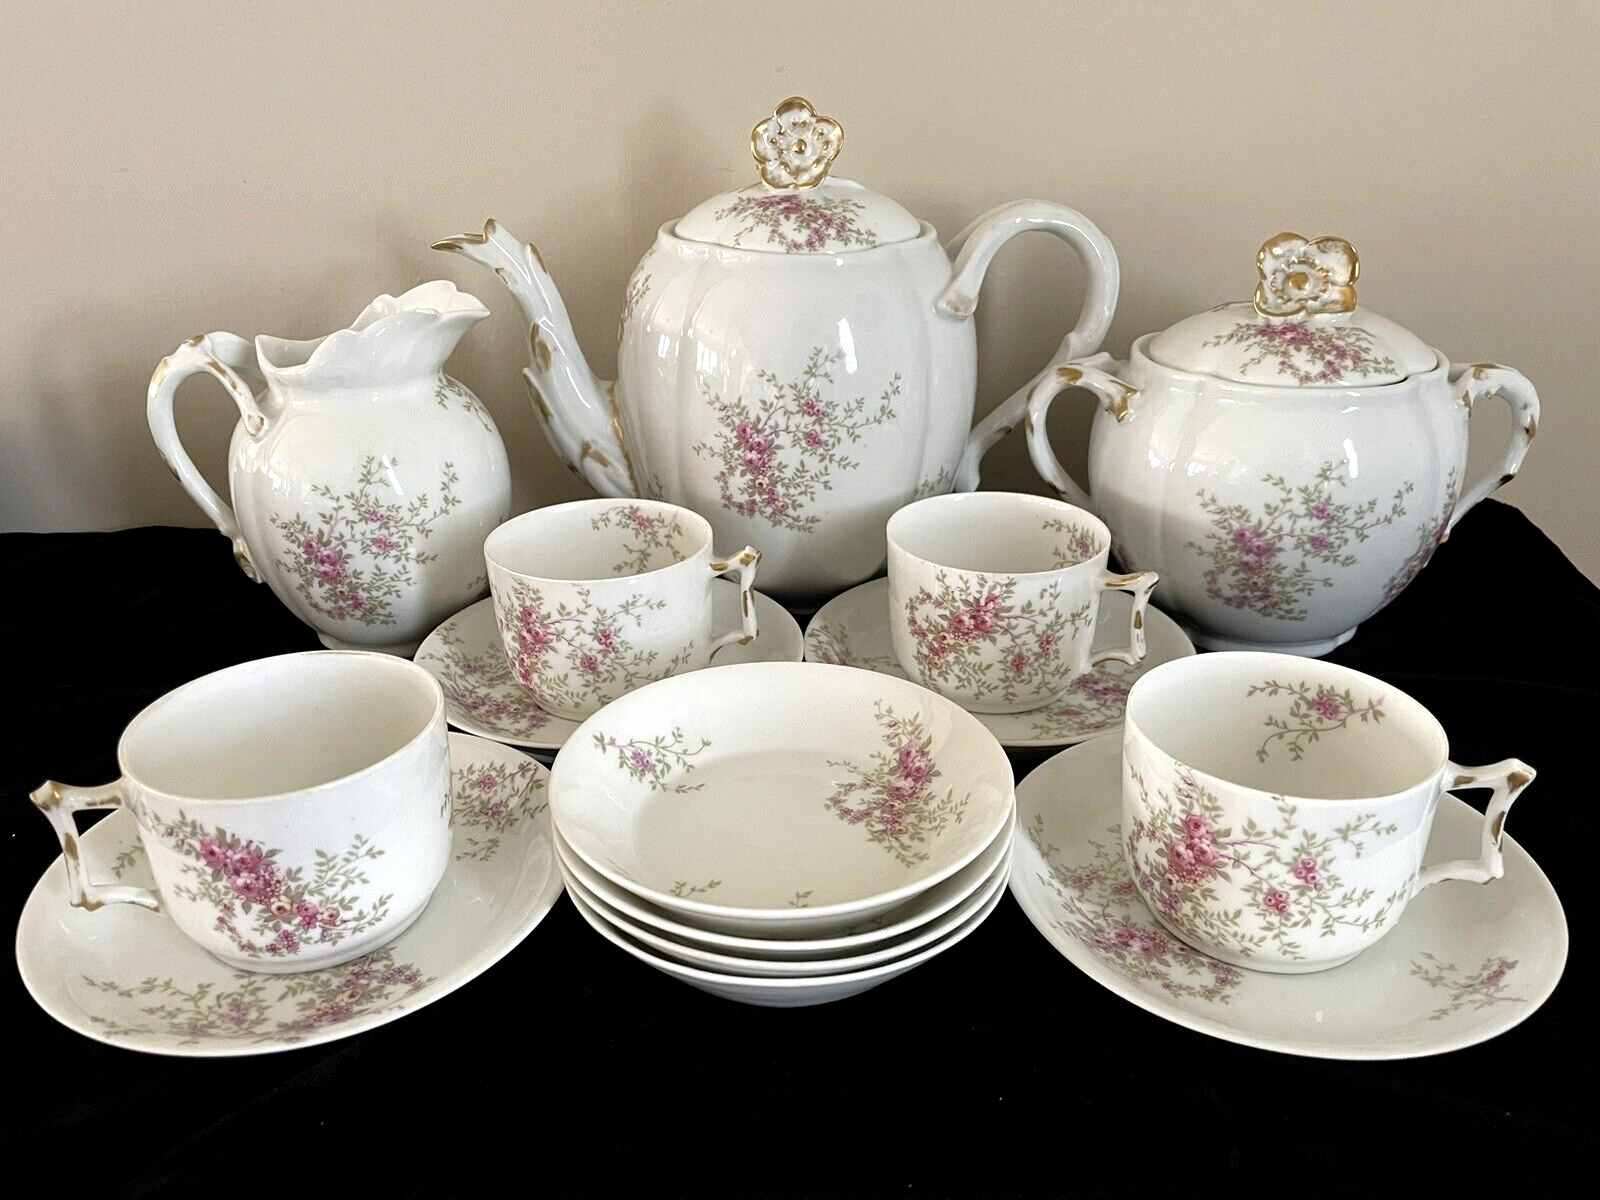 15 Pcs Rare Antique Wm Guerin & Co Limoges Tea Set for 4 Serving Excellent